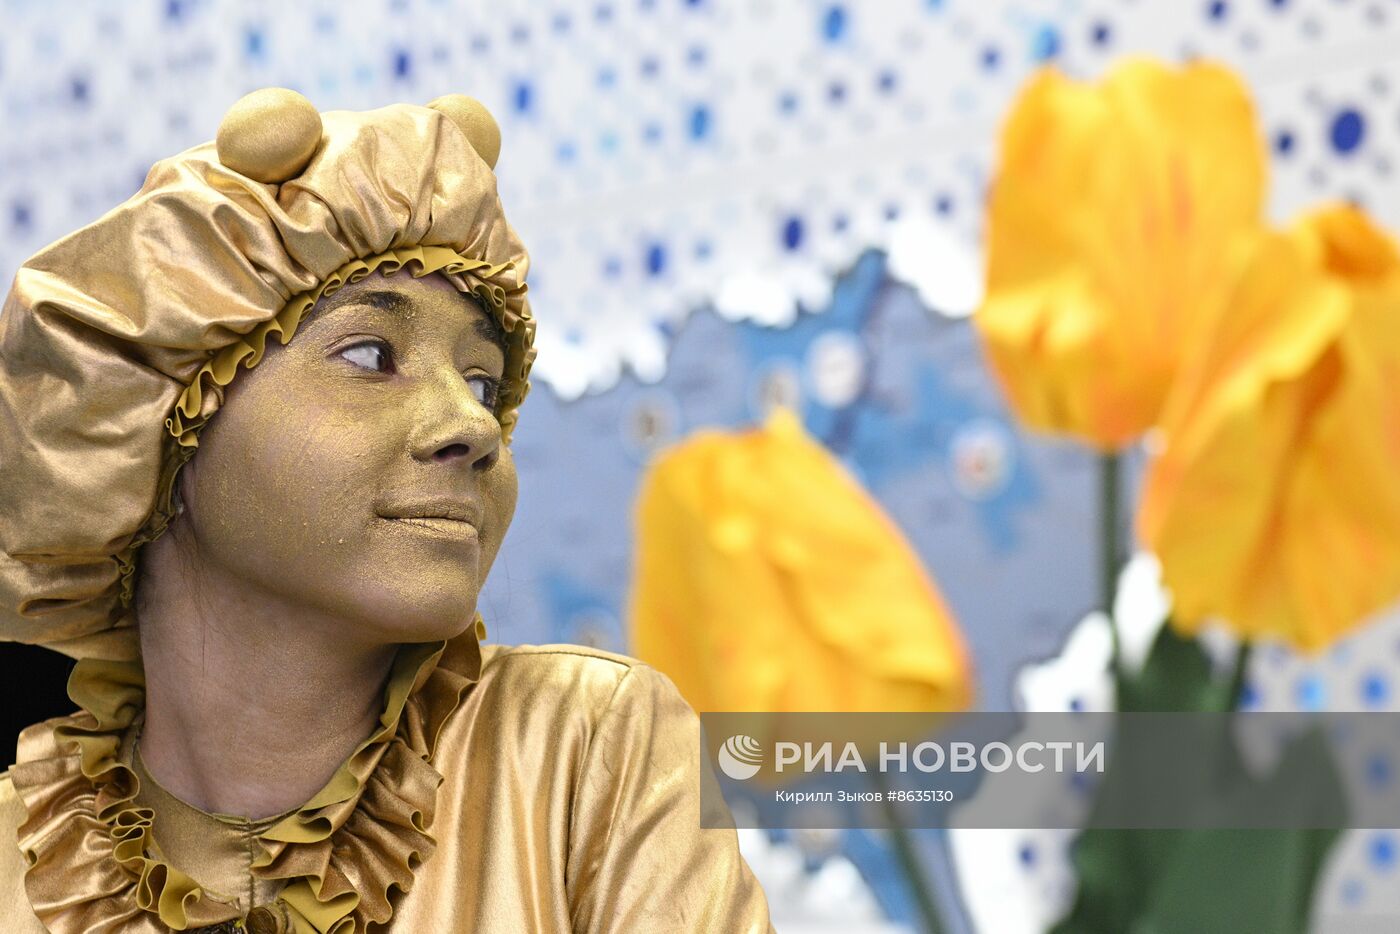 Выставка "Россия" встречает весну